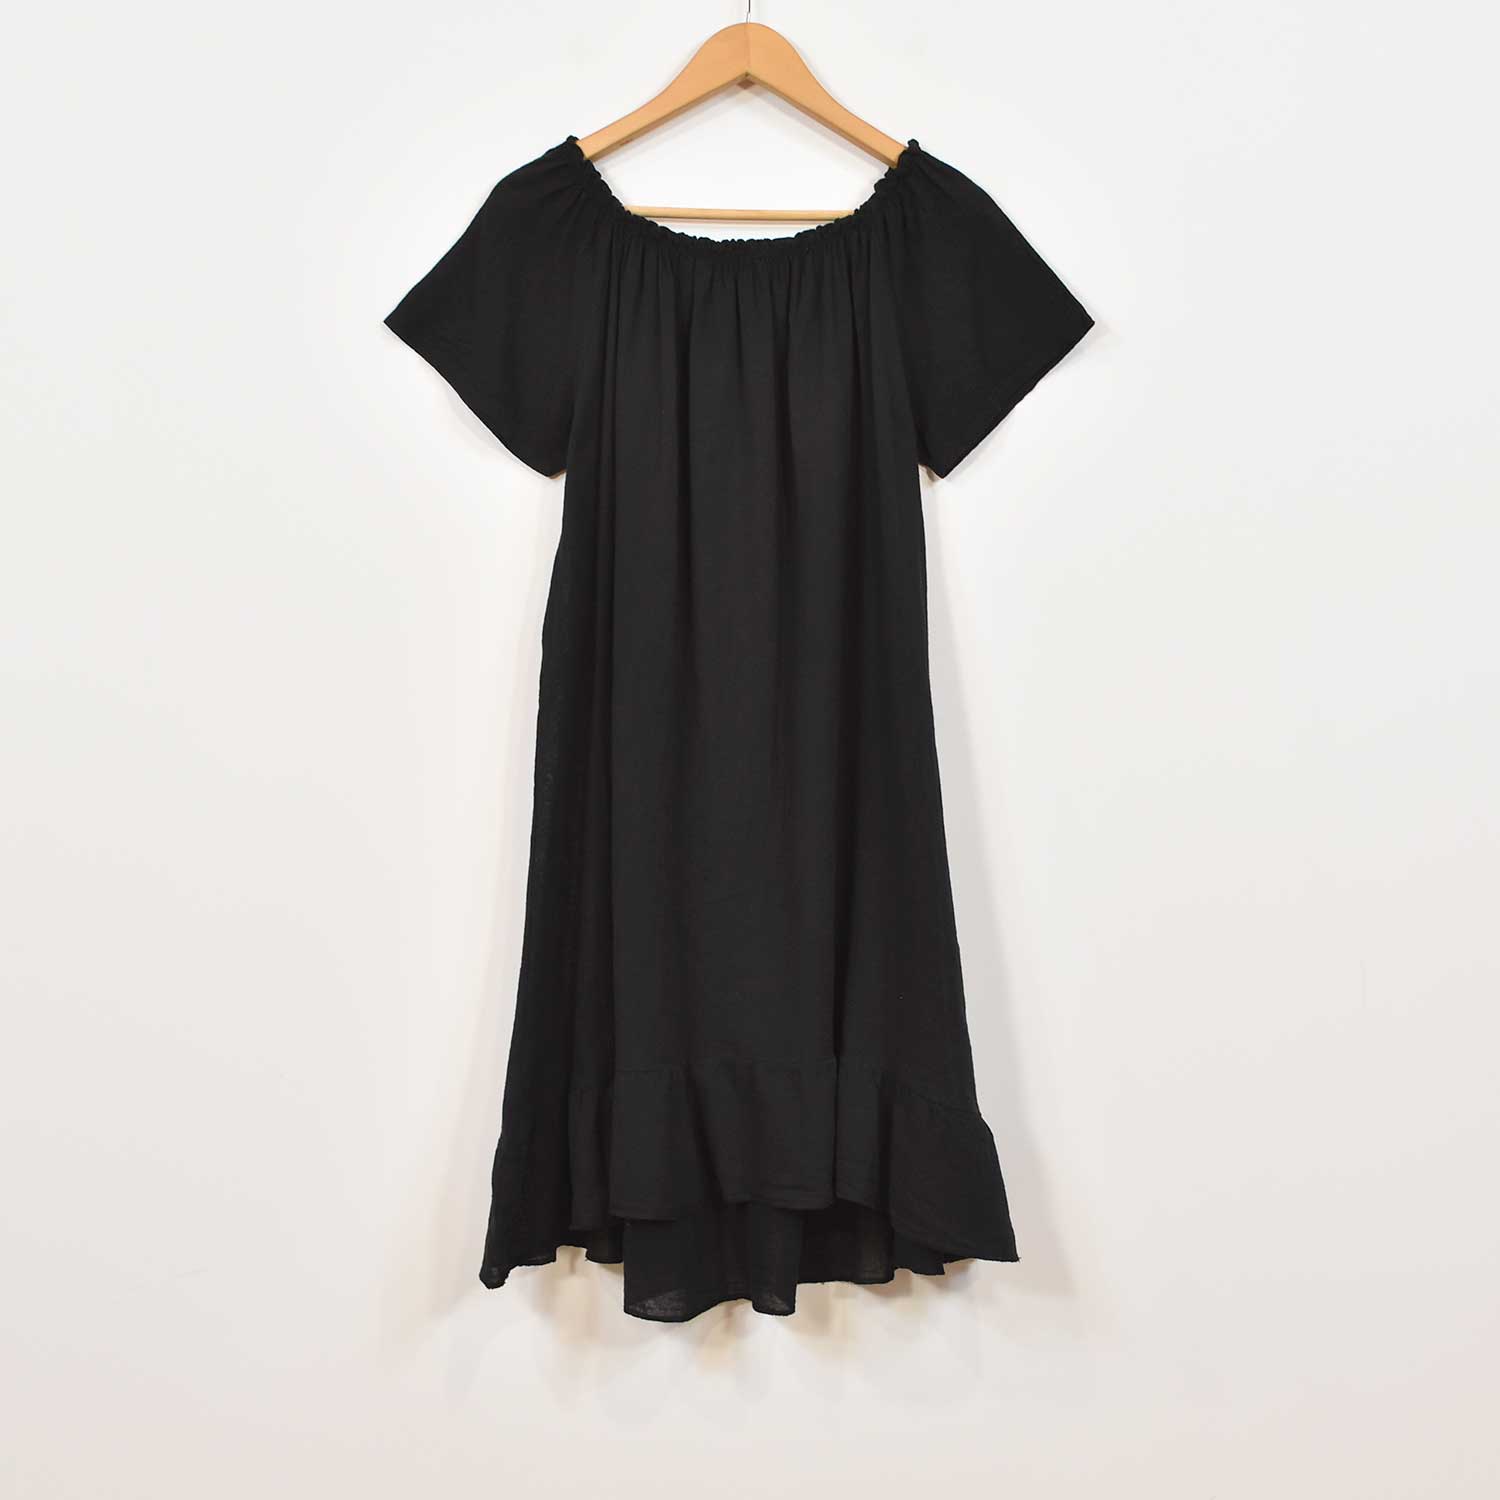 Black cotton ruffle dress